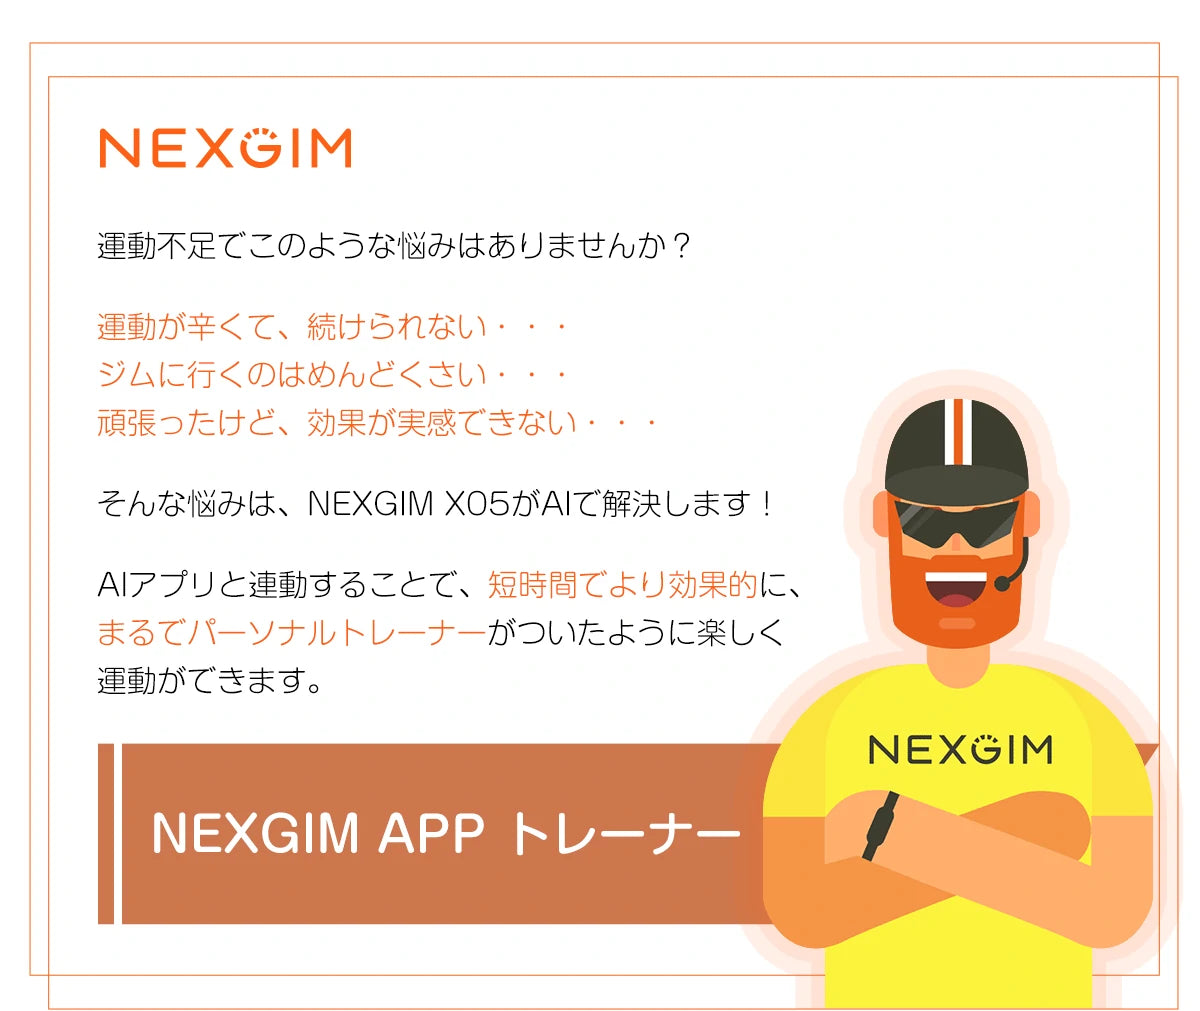 ながらバイク NEXGIM QB-X05 運動不足の悩み、nexgimが解決します